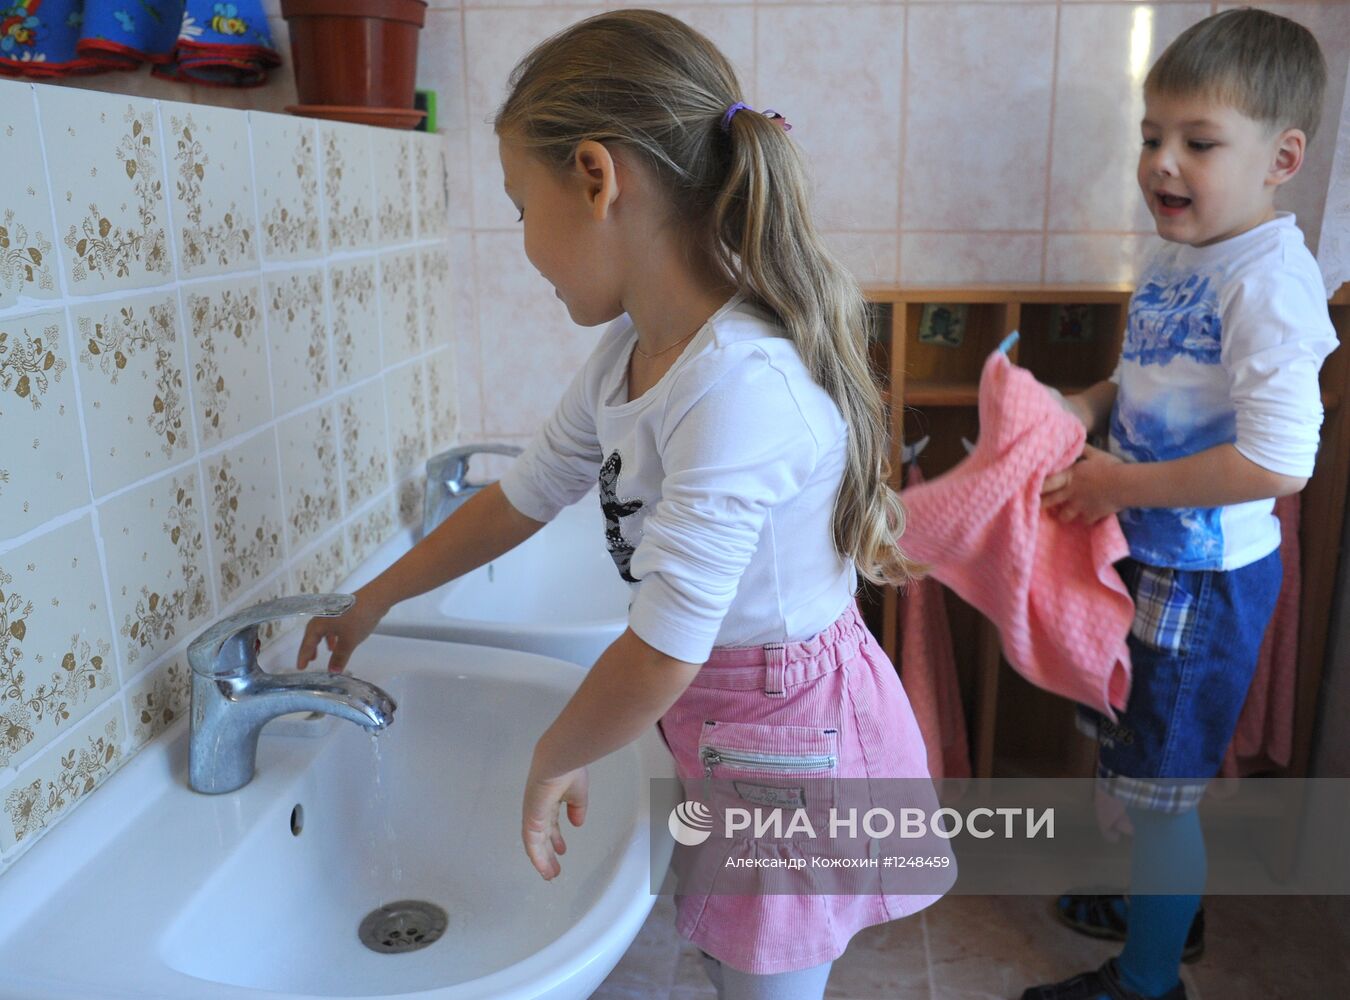 Работа детского сада комбинированного типа "Вишенка" в Москве